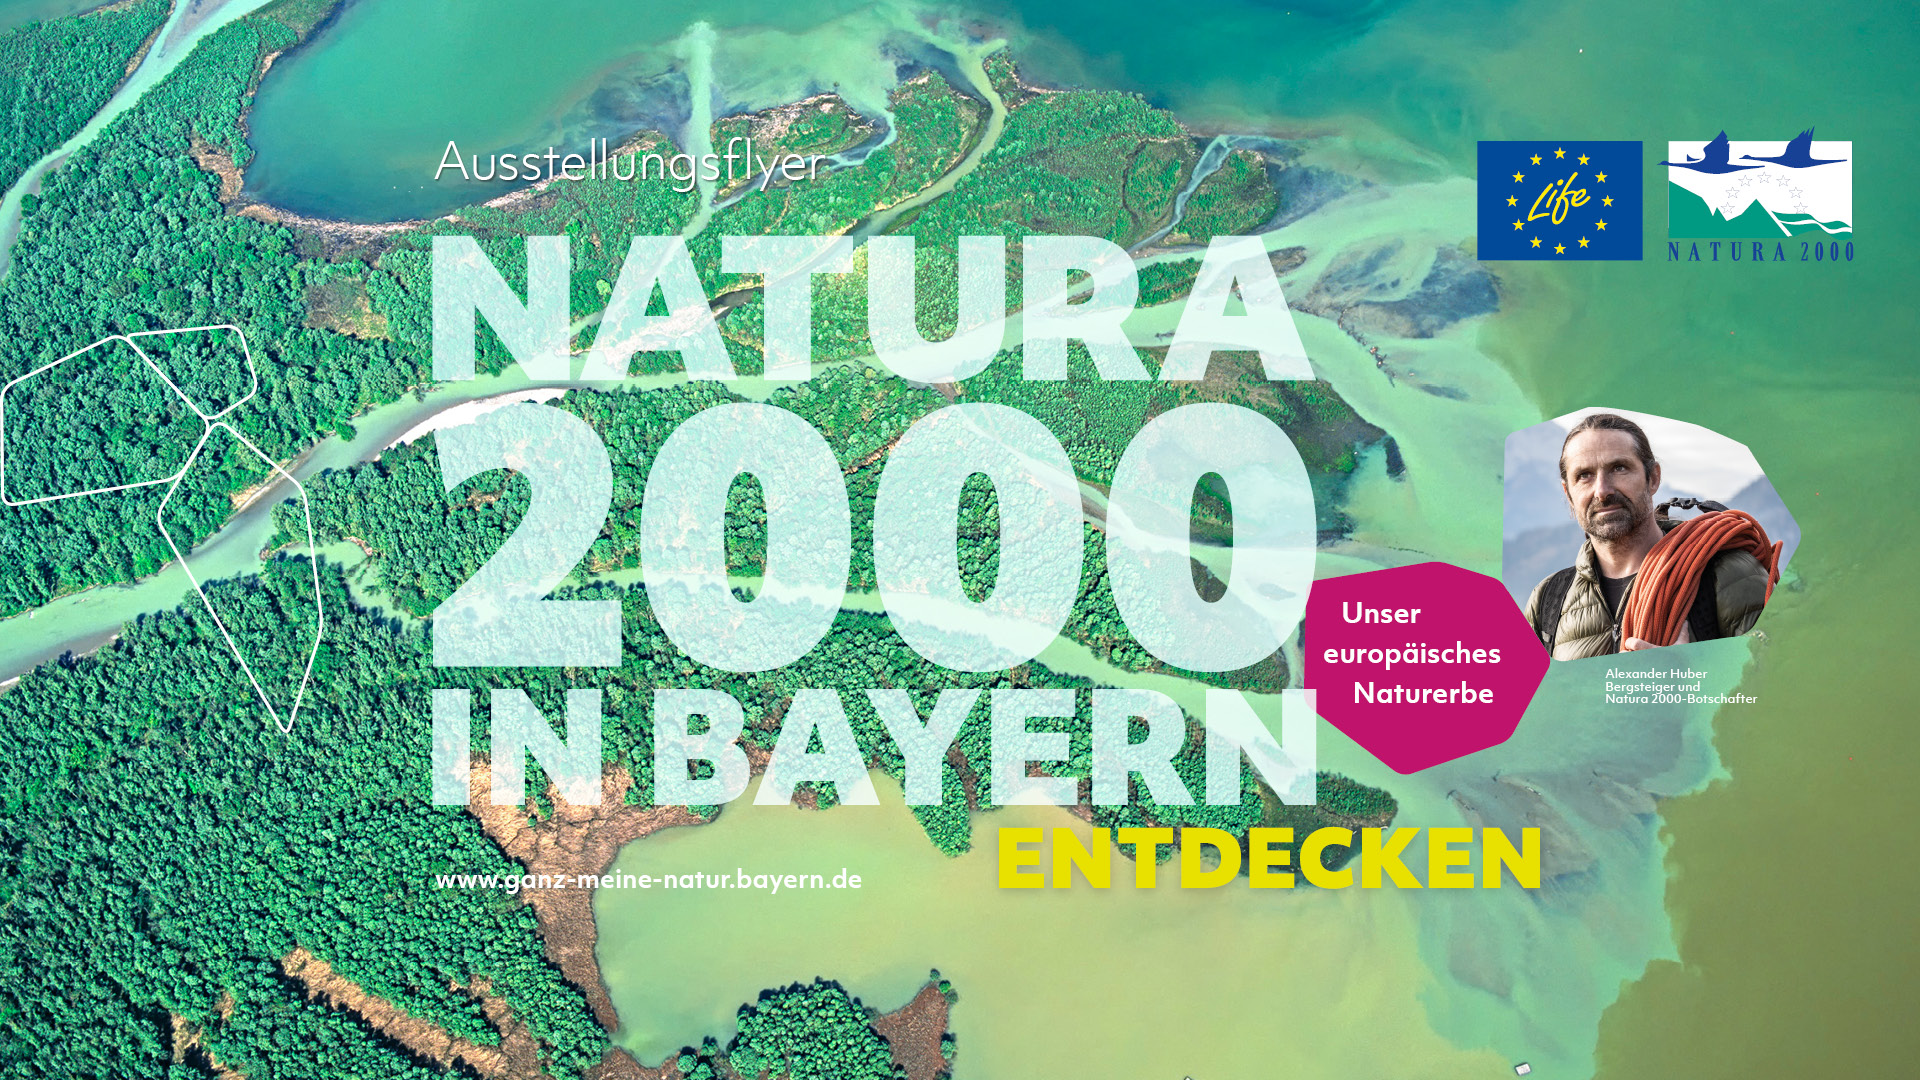 Im Hintergrund ist das türkisgrüne Delta des Flusses Tiroler Achen, der in den Chiemsee mündet, zu sehen. Oben rechts sind die Logos des LIFE-Programms und von Natura 2000 zu sehen. Unten rechts befinden sich zwei Waben, eine mit violettem Hintergrund und der Aufschrift "Unser europäisches Naturerbe" und eine mit einem Bild von Alexander Huber.